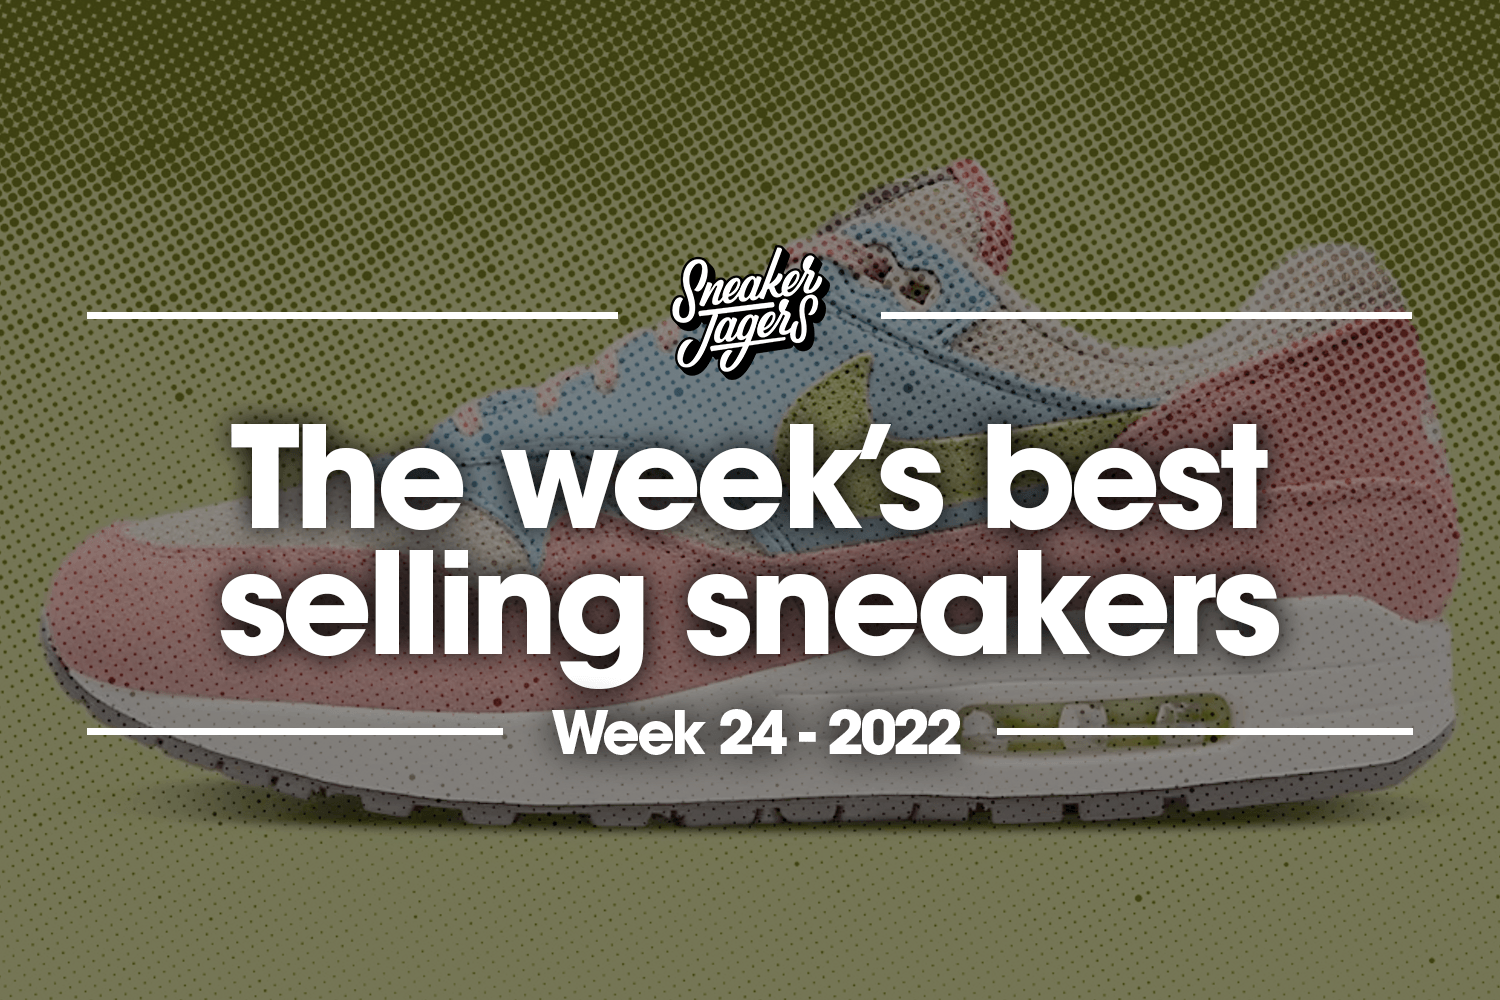 The 5 best-selling sneakers of week 24